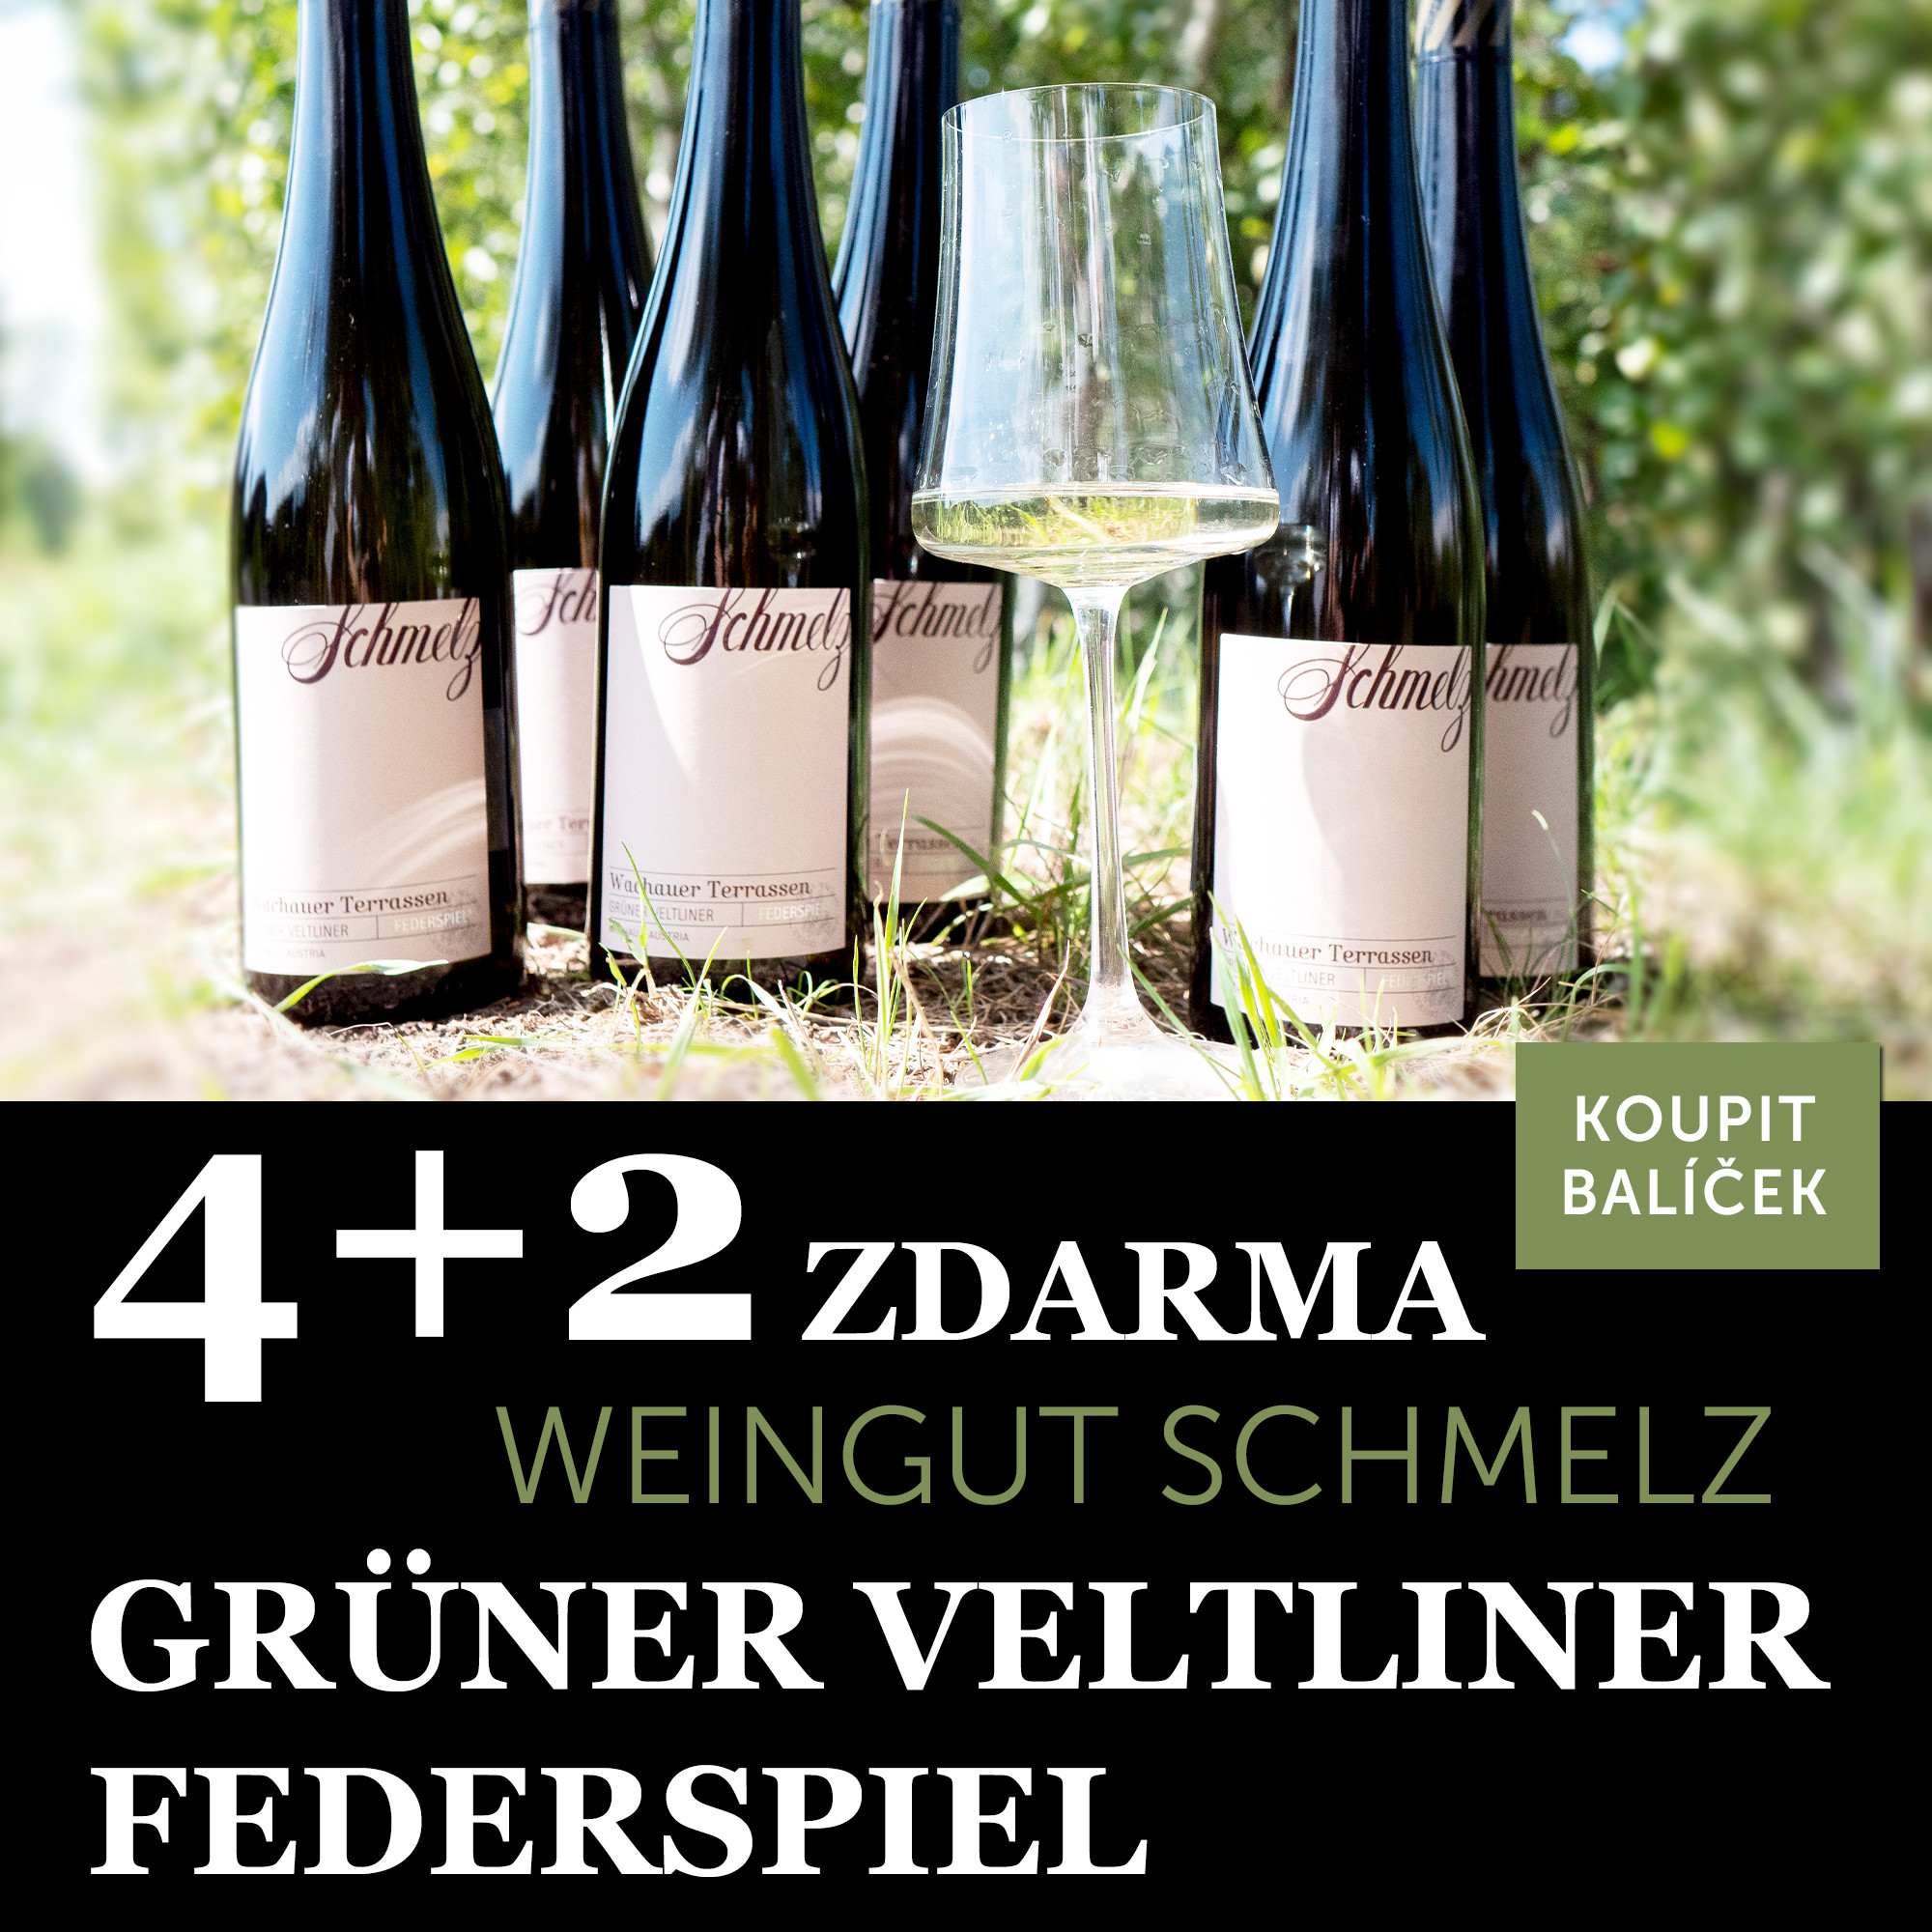 Víno měsíce září - Schmelz Grüner Veltliner Federspiel 4+2